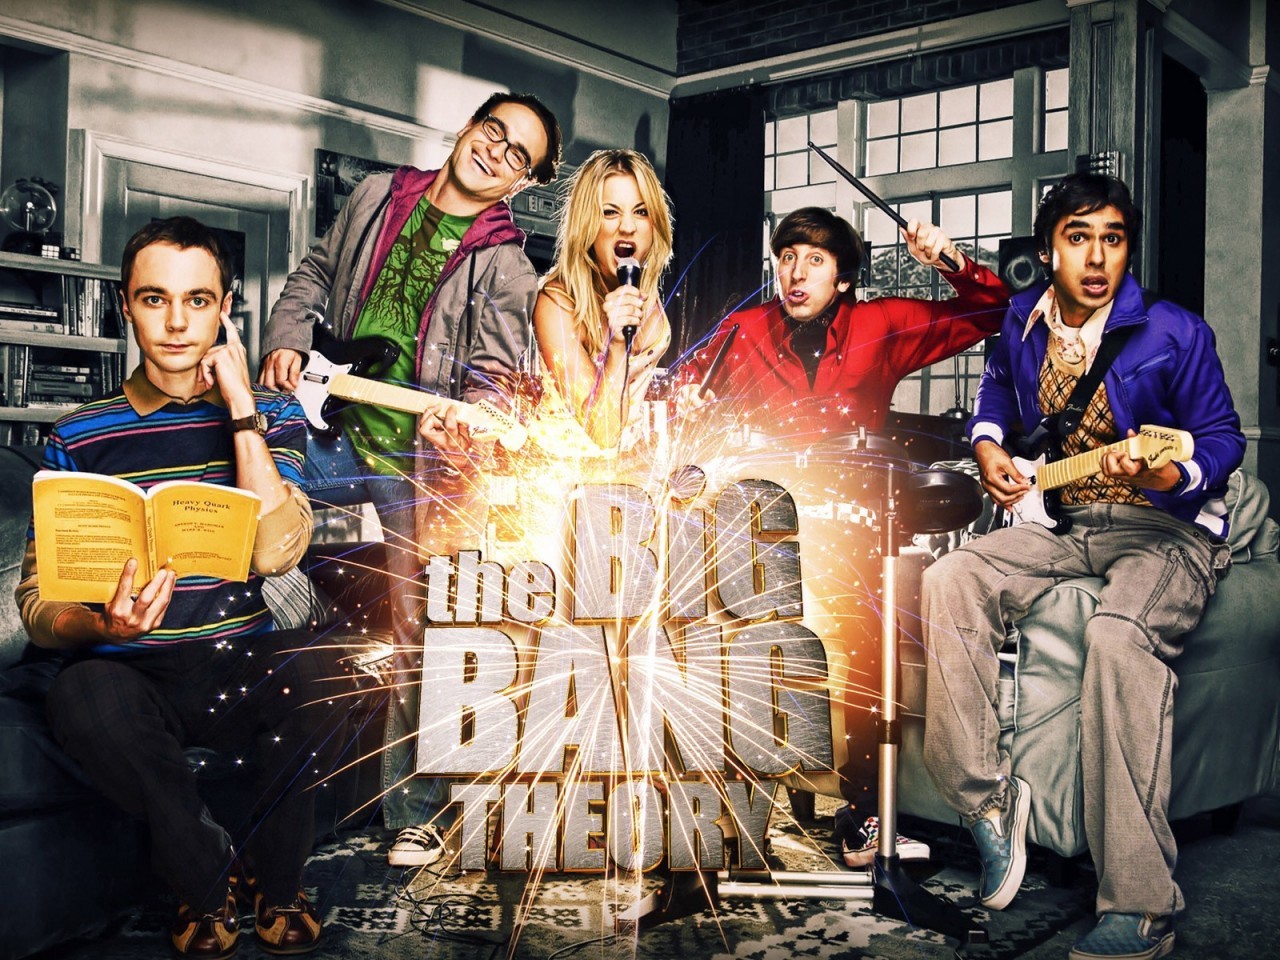 Melhores papéis de parede de Big Bang Theory para tela do telefone